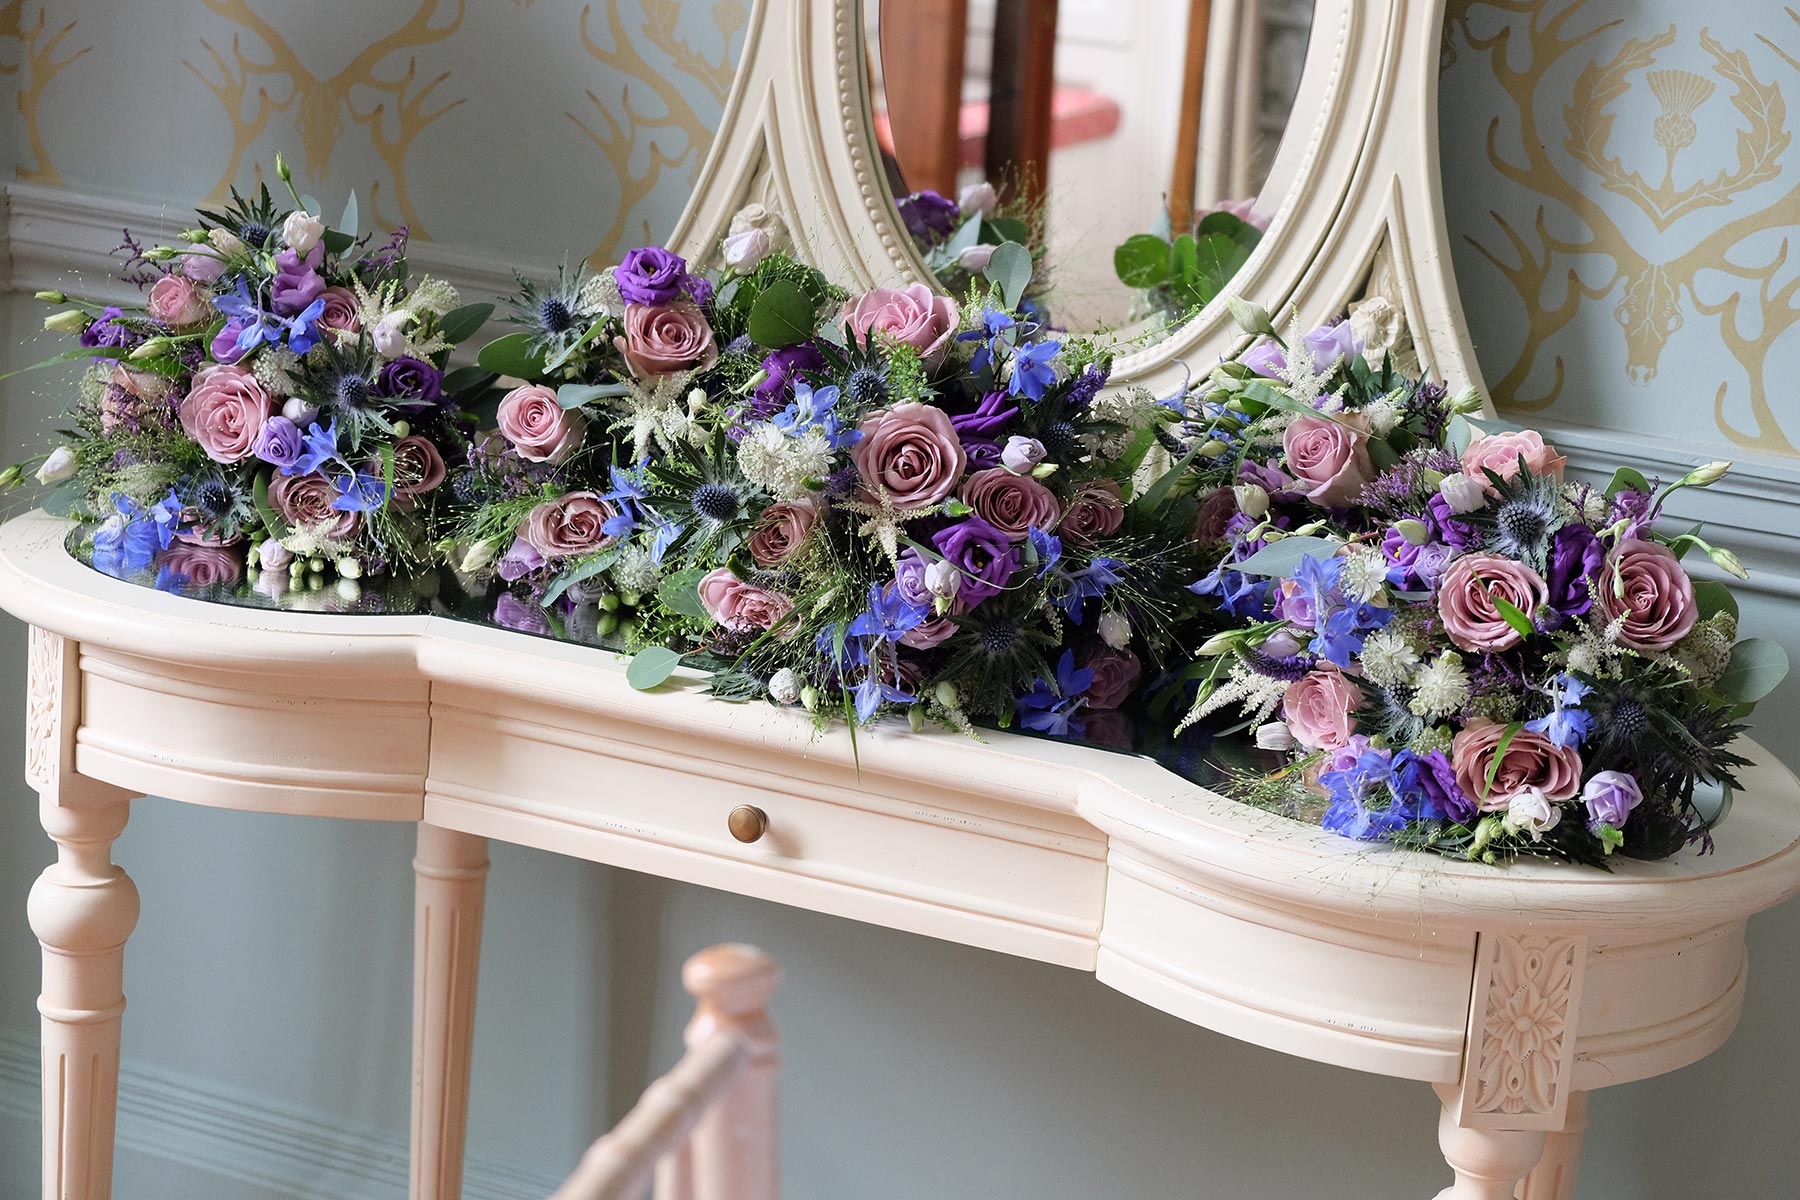 Isla Duncan Florist | Aberdeen | Events | Corporate Flowers | Wedding Florist Aberdeenshire |  North East Scotland